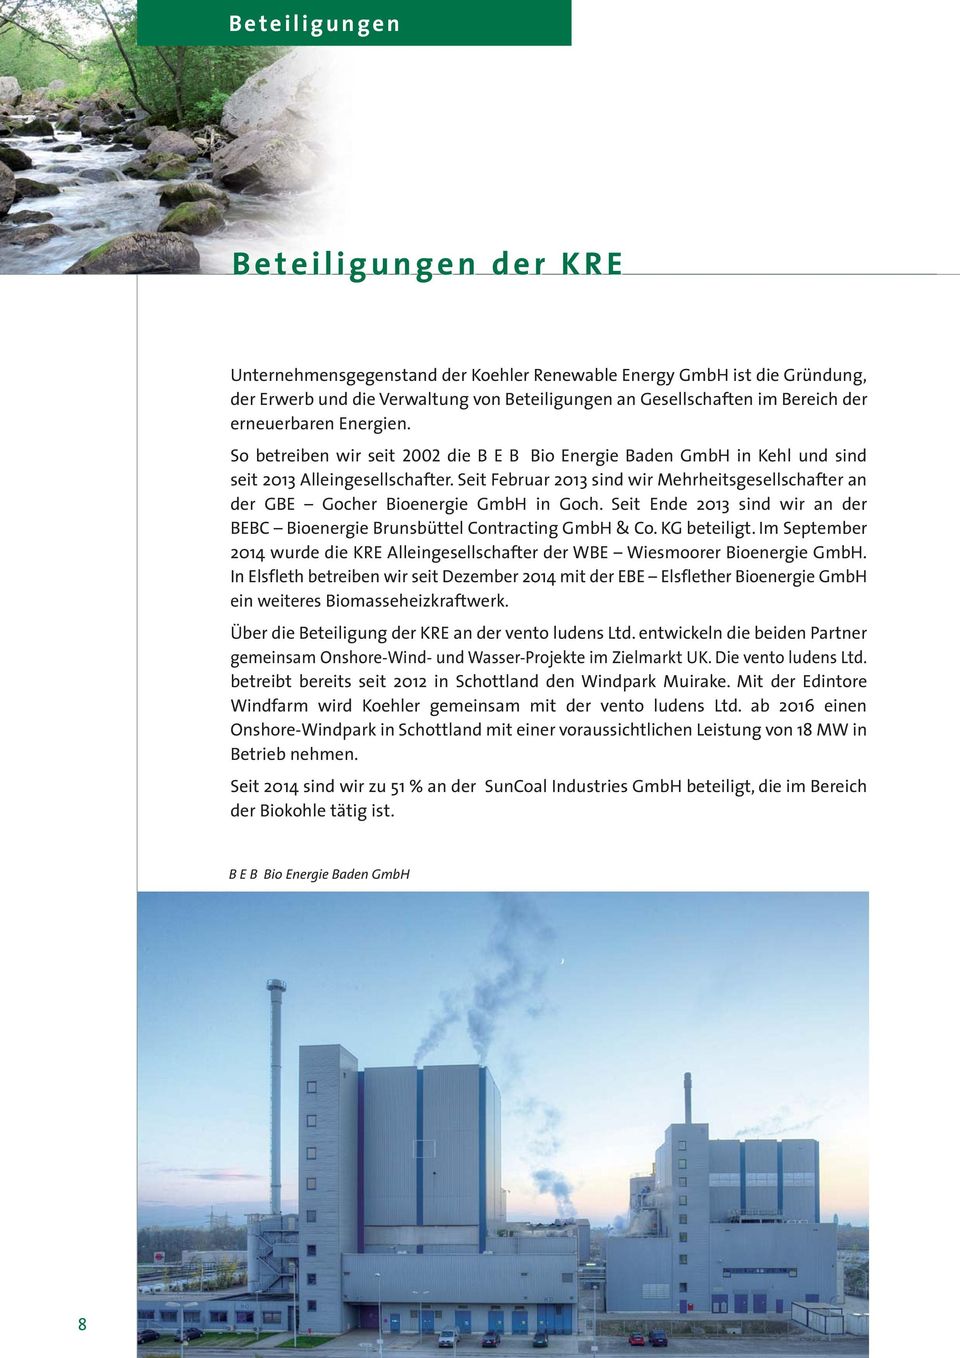 Seit Februar 2013 sind wir Mehrheits gesellschafter an der GBE Gocher Bioenergie GmbH in Goch. Seit Ende 2013 sind wir an der BEBC Bioenergie Brunsbüttel Contracting GmbH & Co. KG beteiligt.